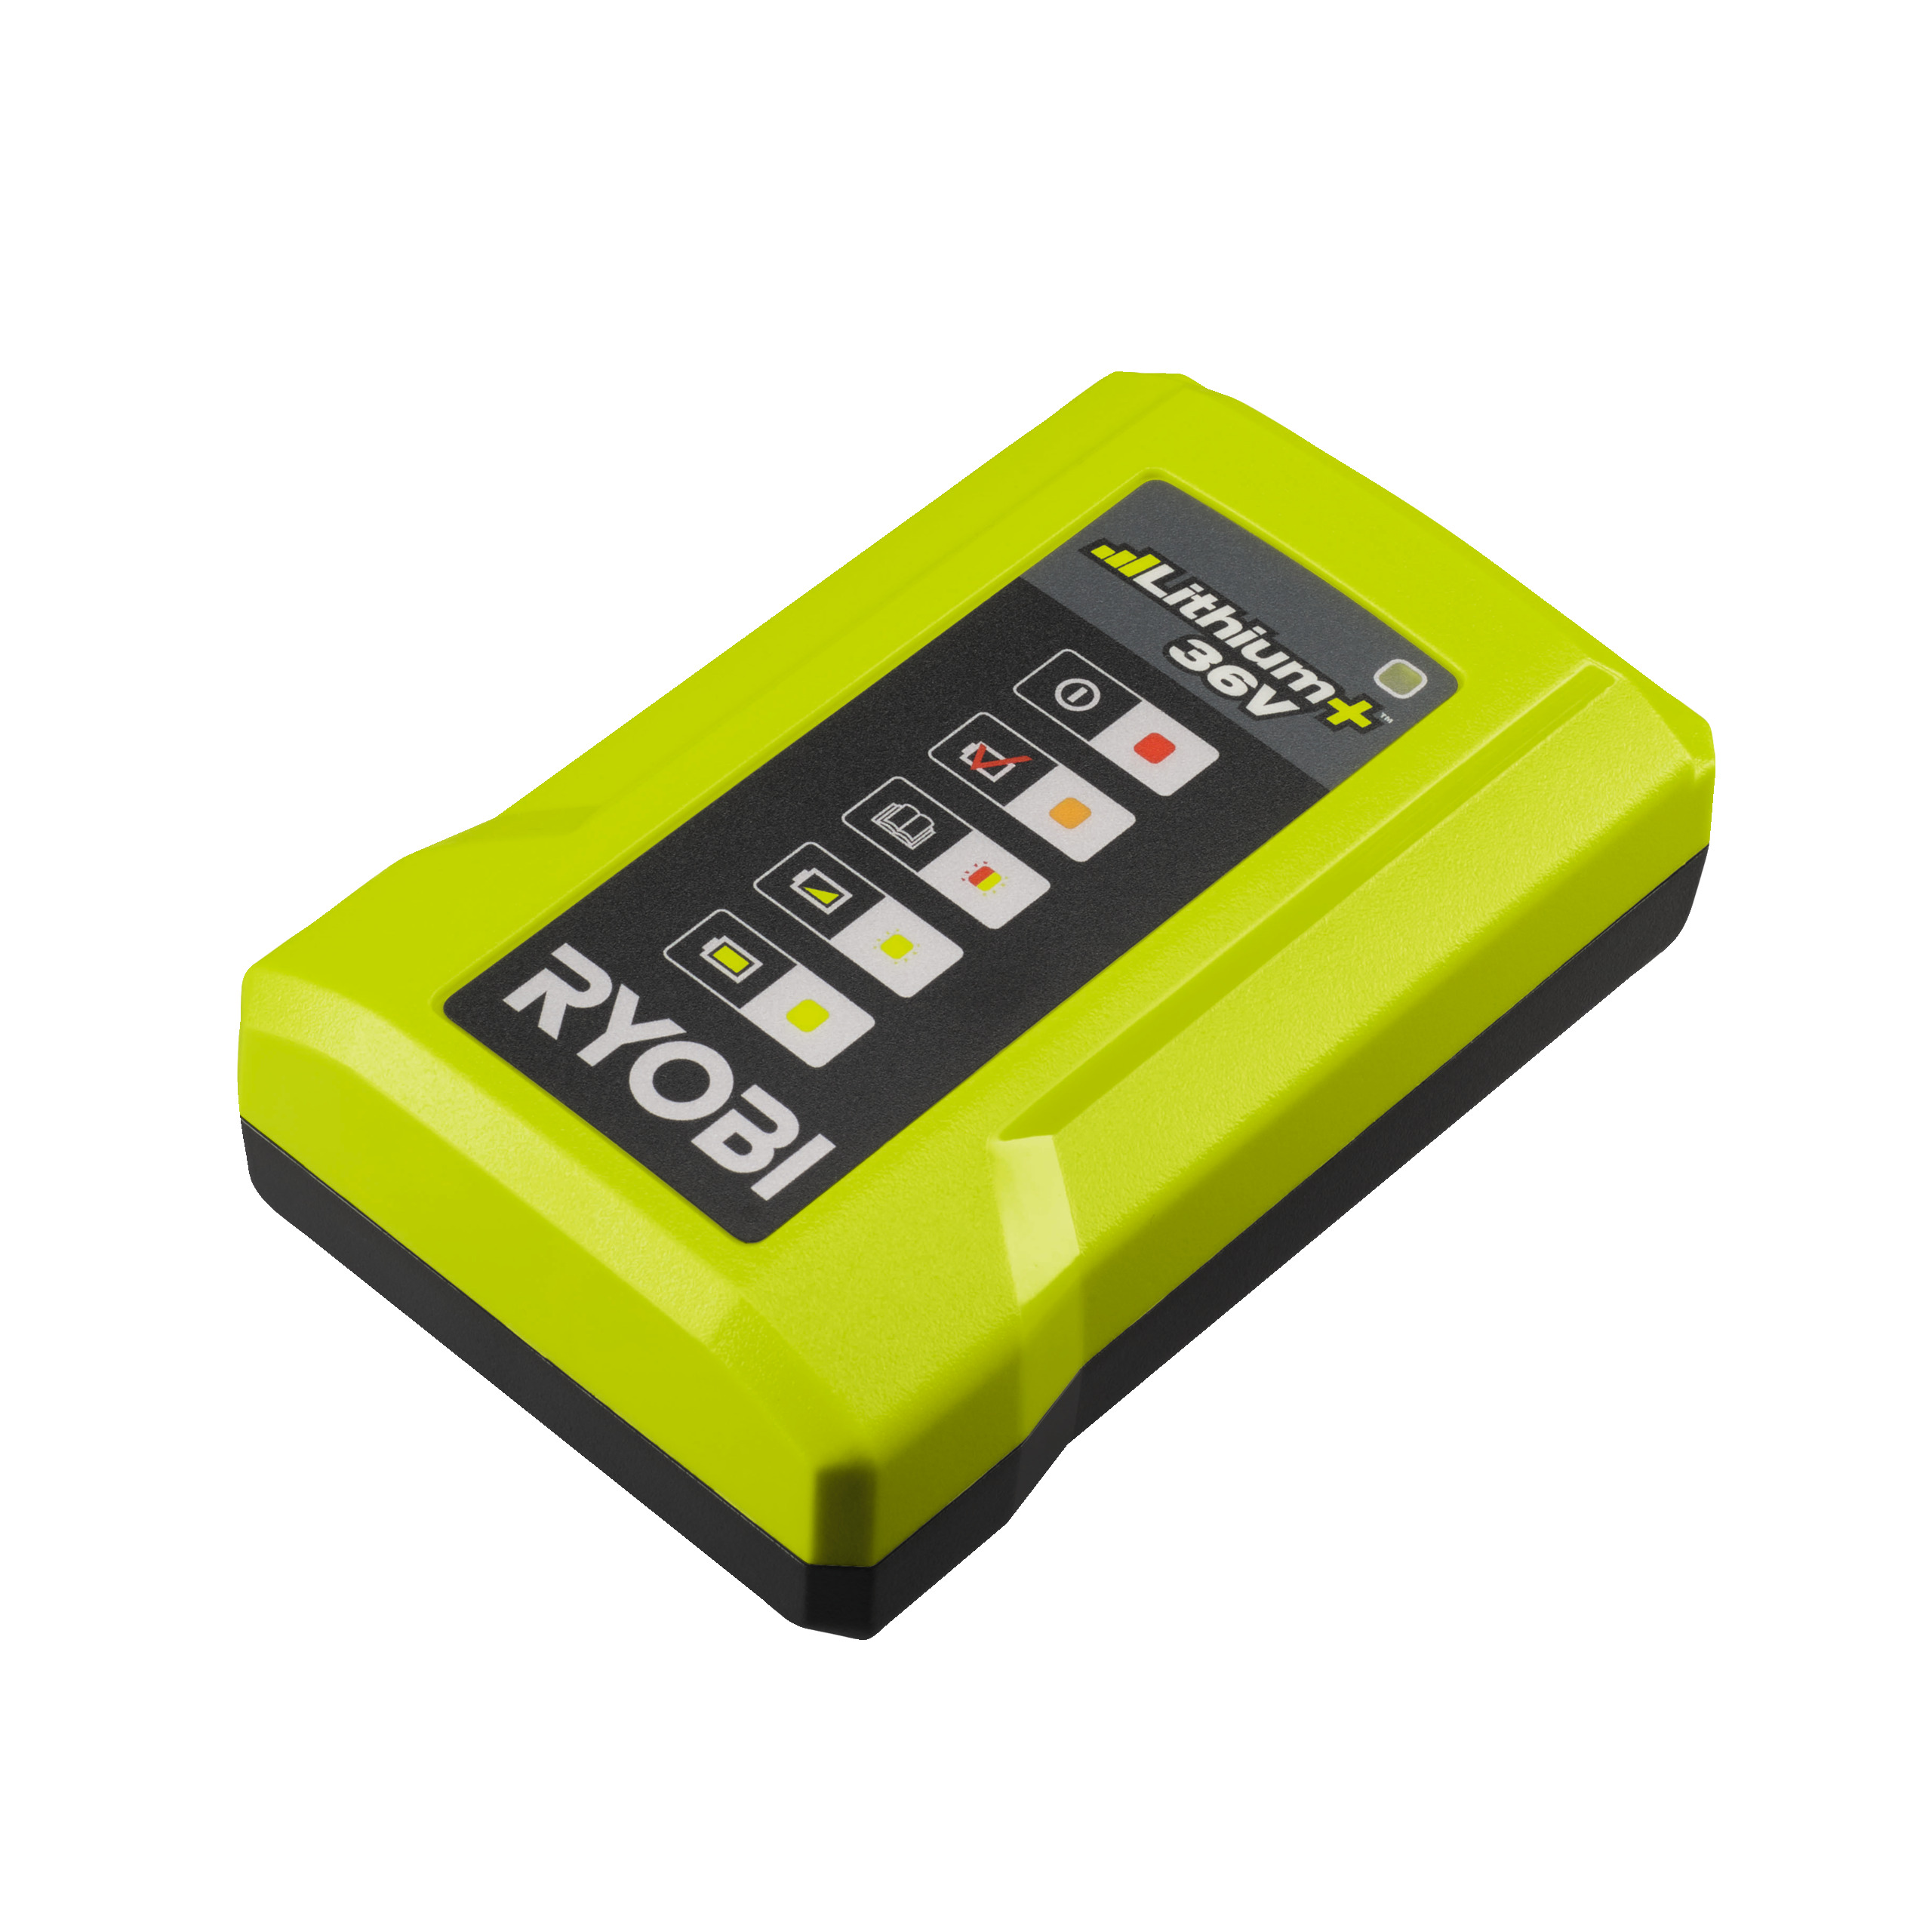 Chargeurs de batterie 36v Ryobi: compatibles avec la gamme d